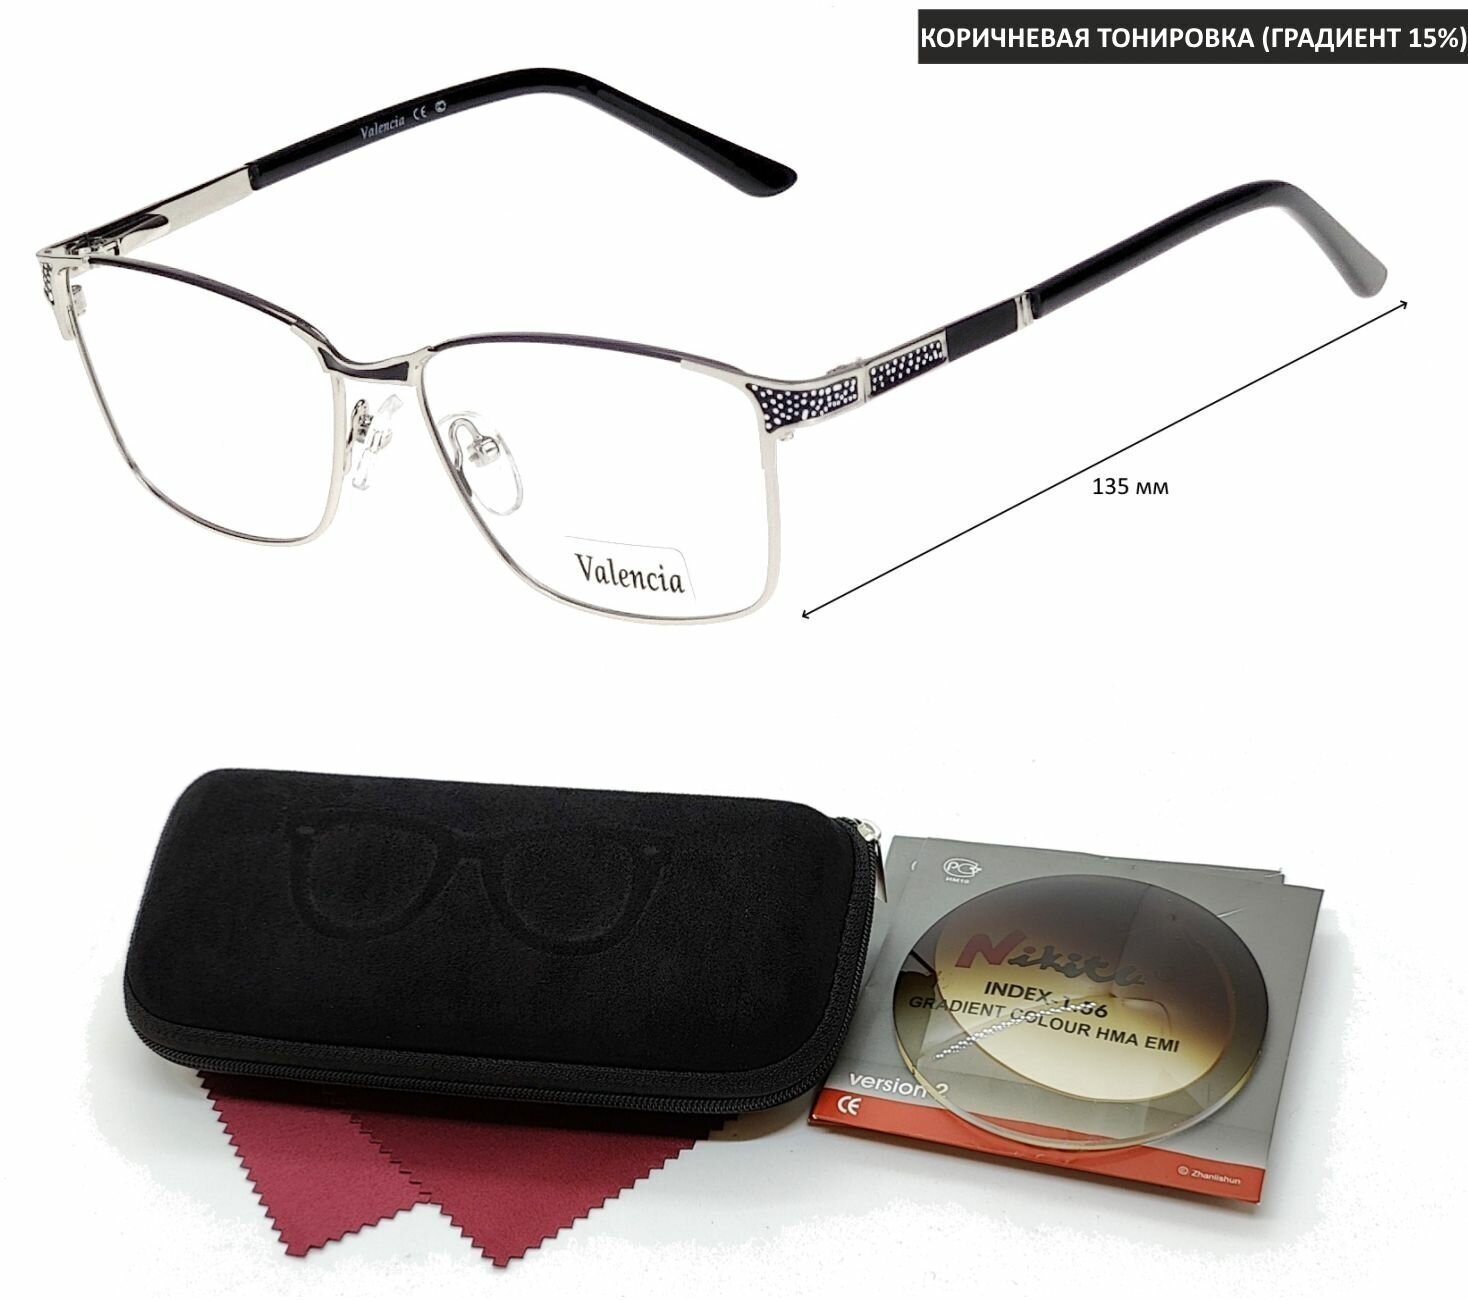 Тонированные очки с футляром-змейка VALENCIA мод. 32463 Цвет 1 с линзами NIKITA 1.56 GRADIENT BROWN, HMA/EMI -2.25 РЦ 60-62